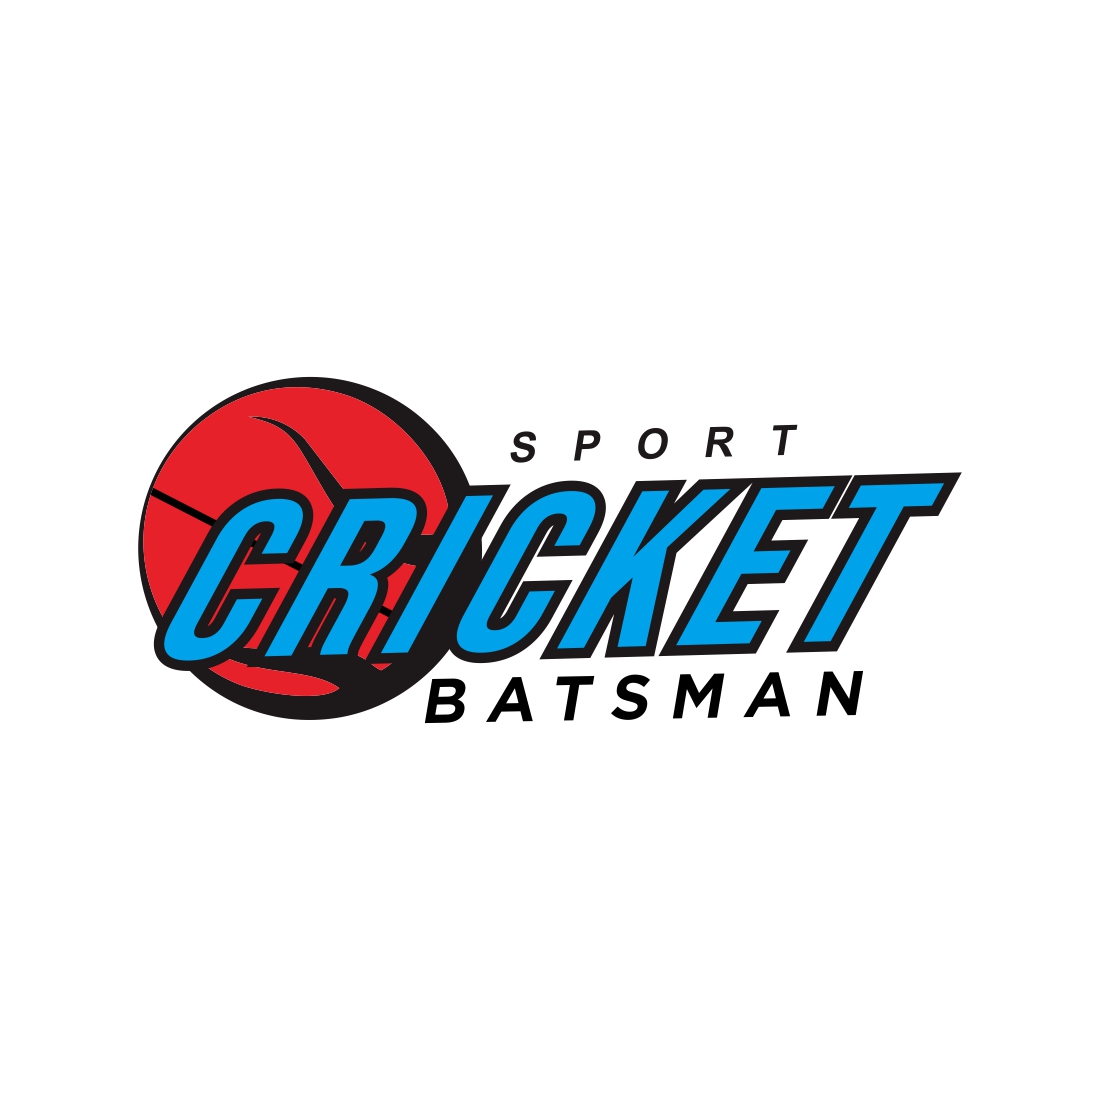 Cricket sport logo design vector illustration preview image.